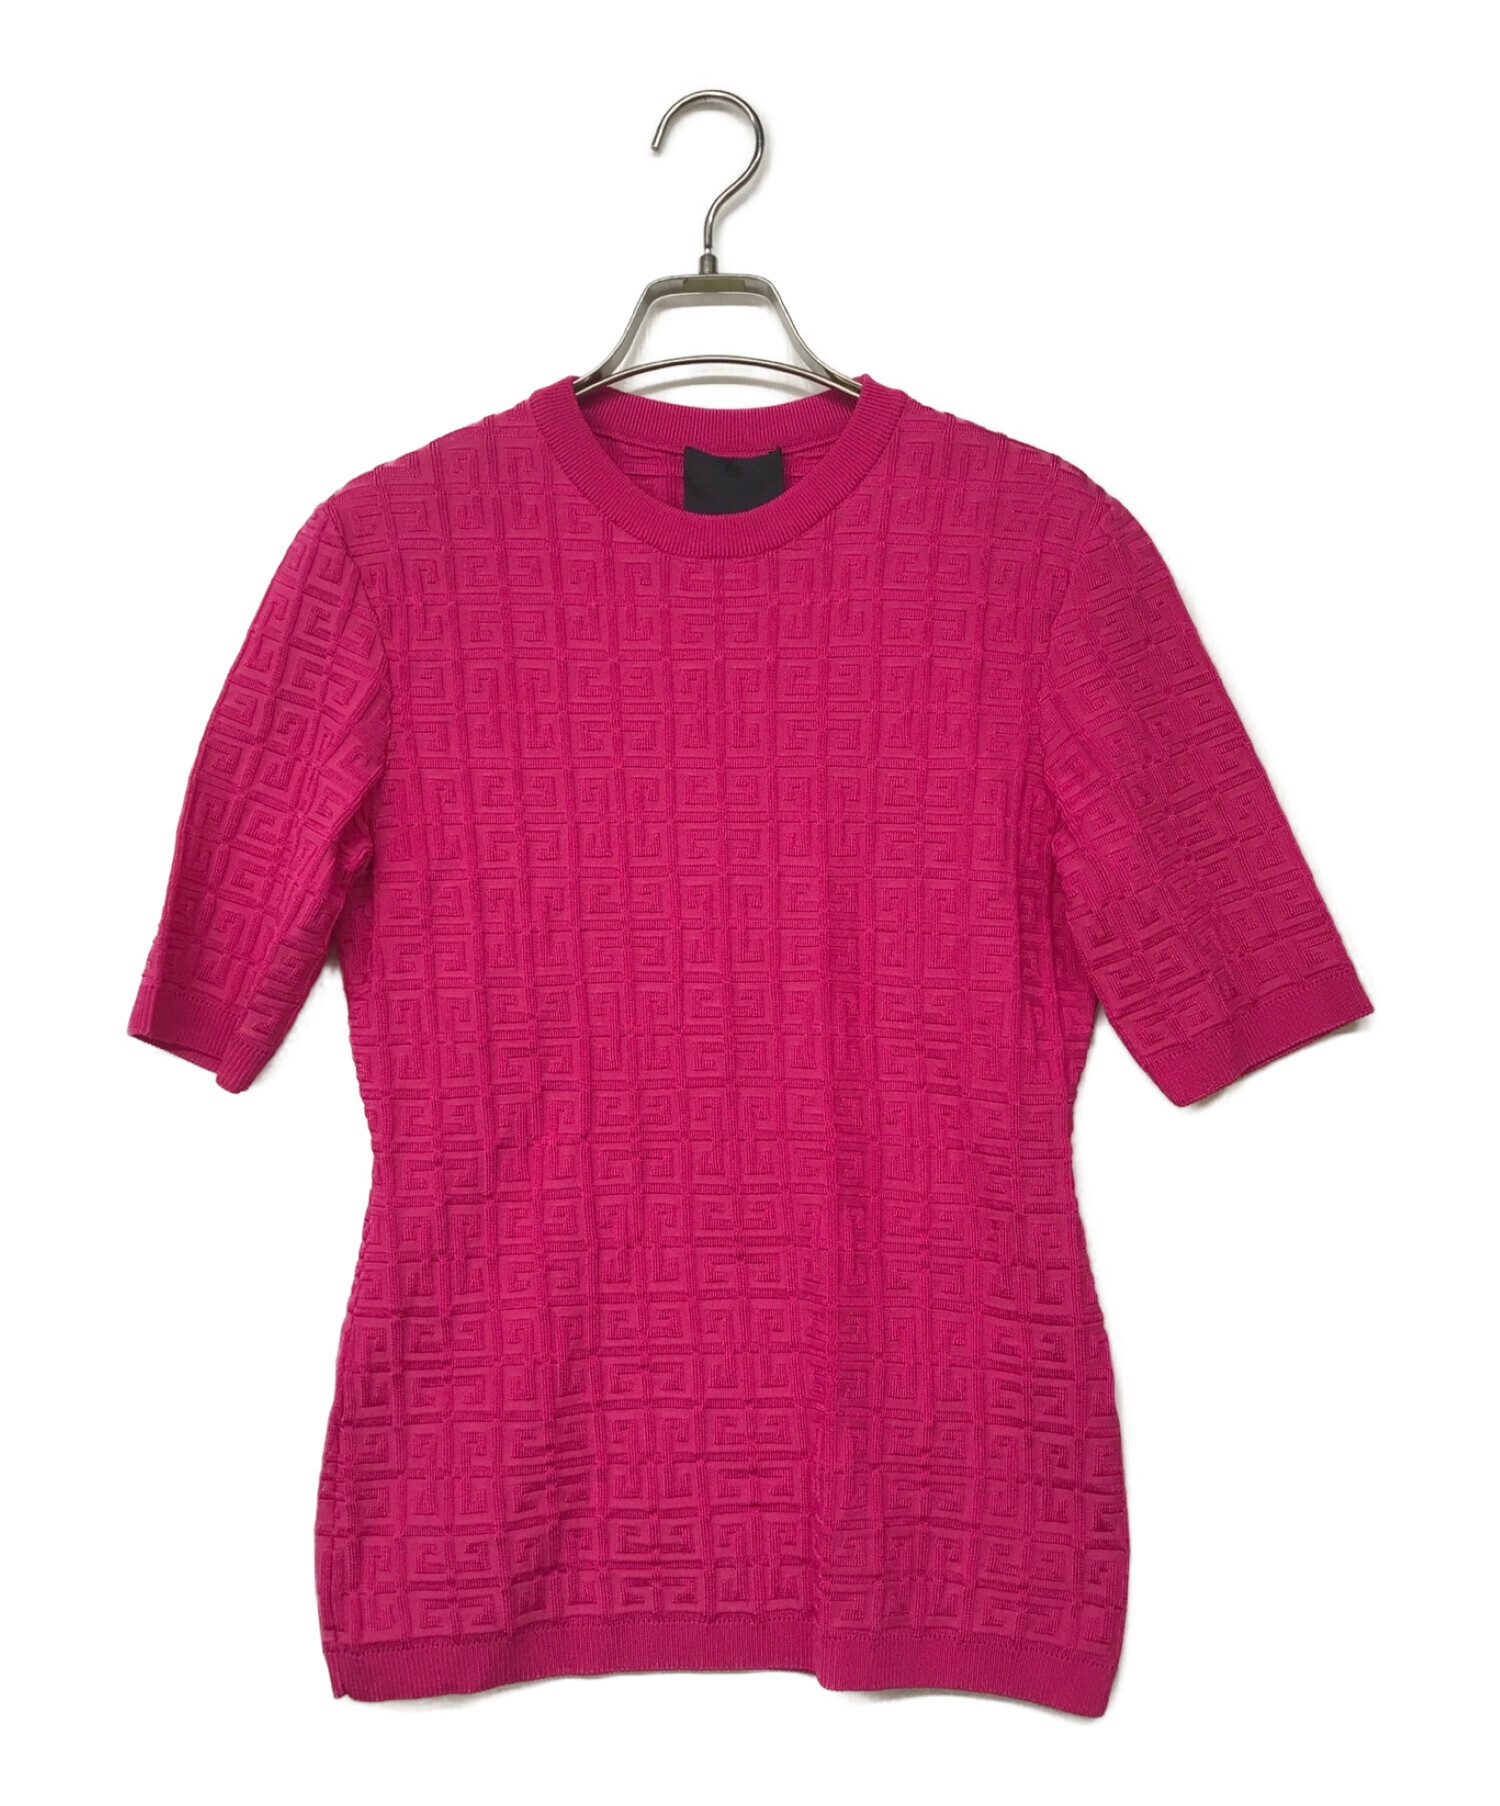 ジバンシィ ニットTシャツ 半袖 レーヨン ピンク XSサイズ約35cm着丈